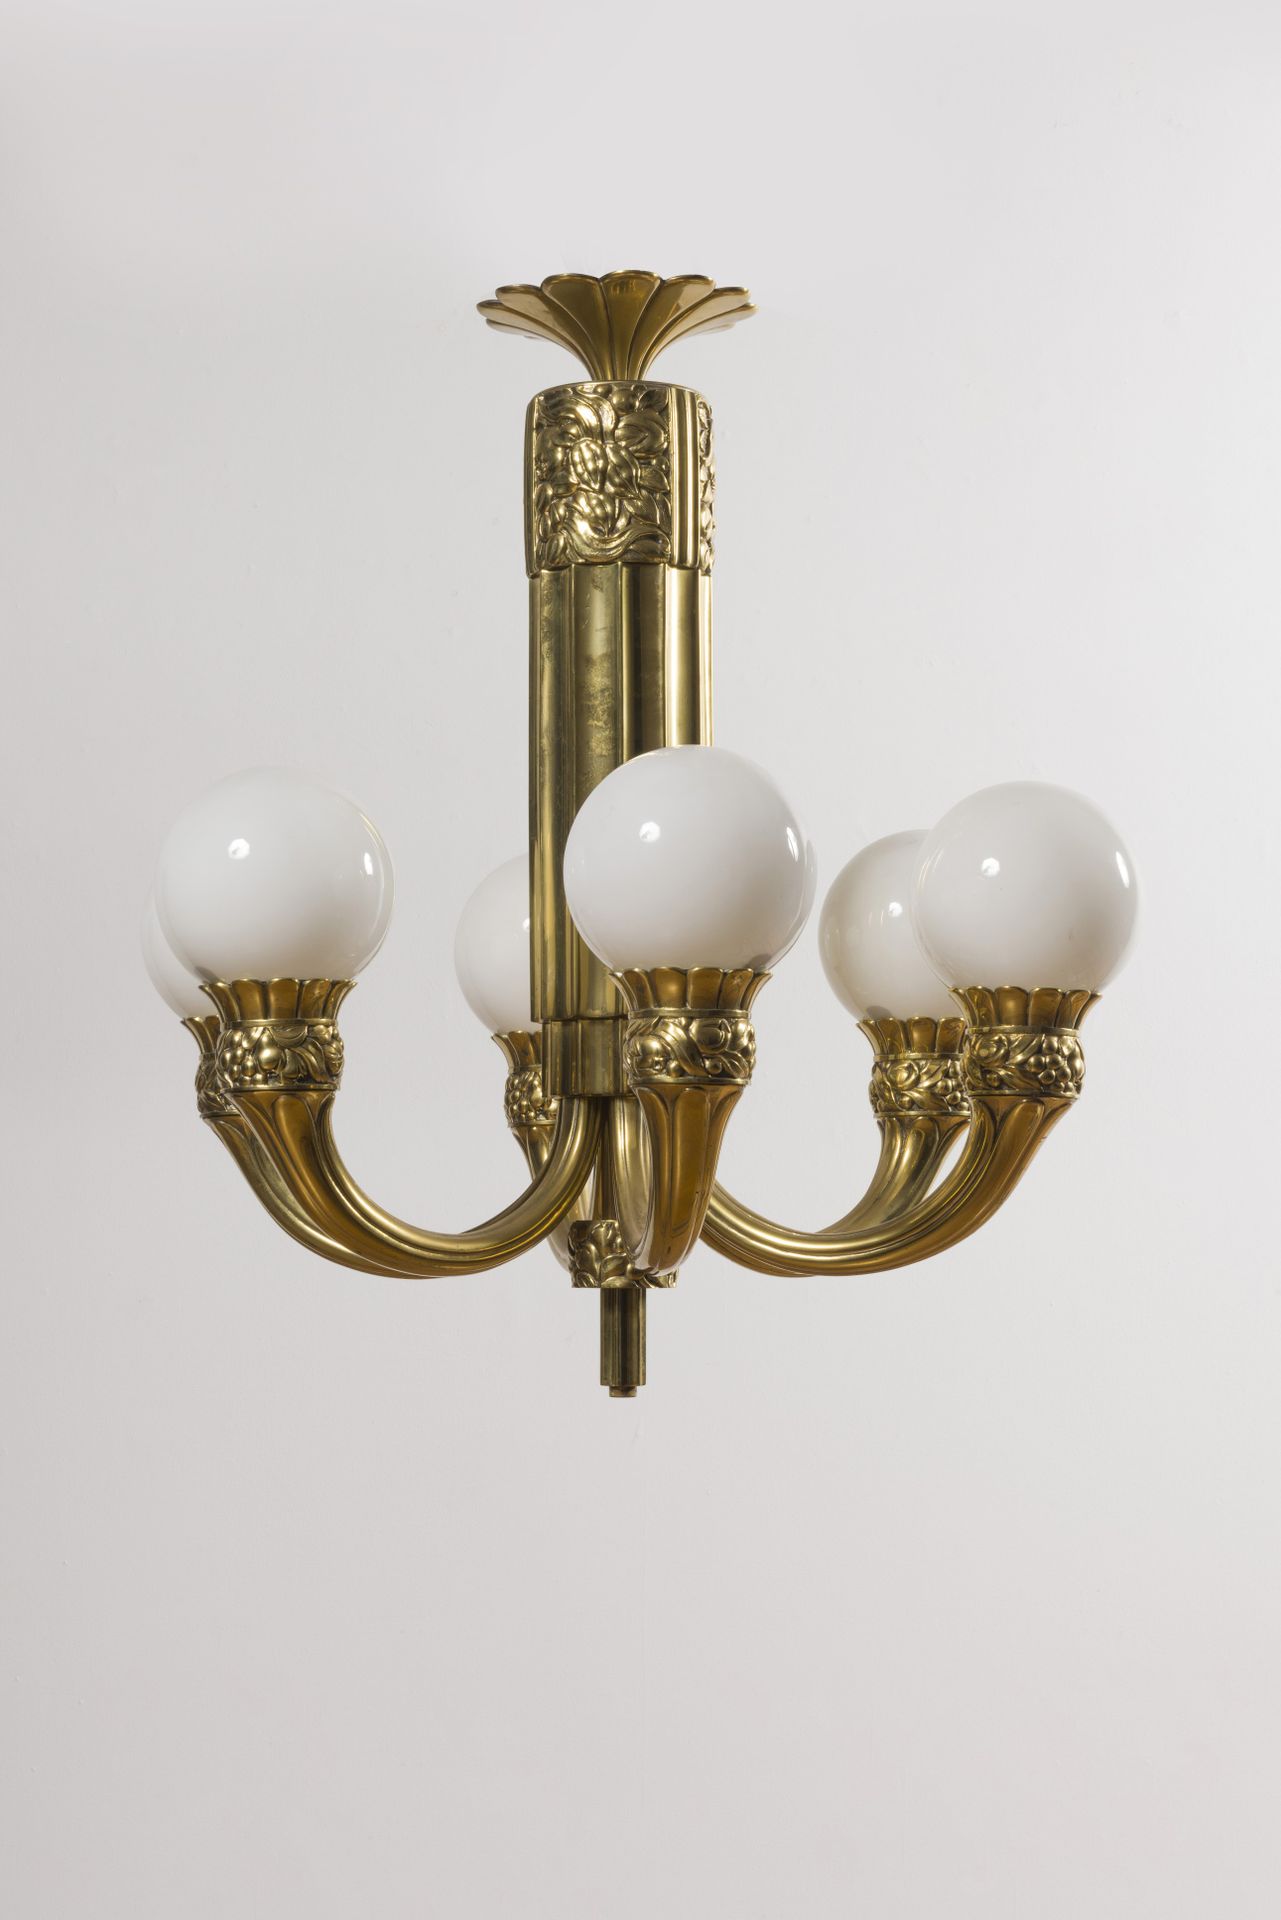 Null Plafonnier à six lumières en bronze doré, circa 1930

A décors d'éléments v&hellip;